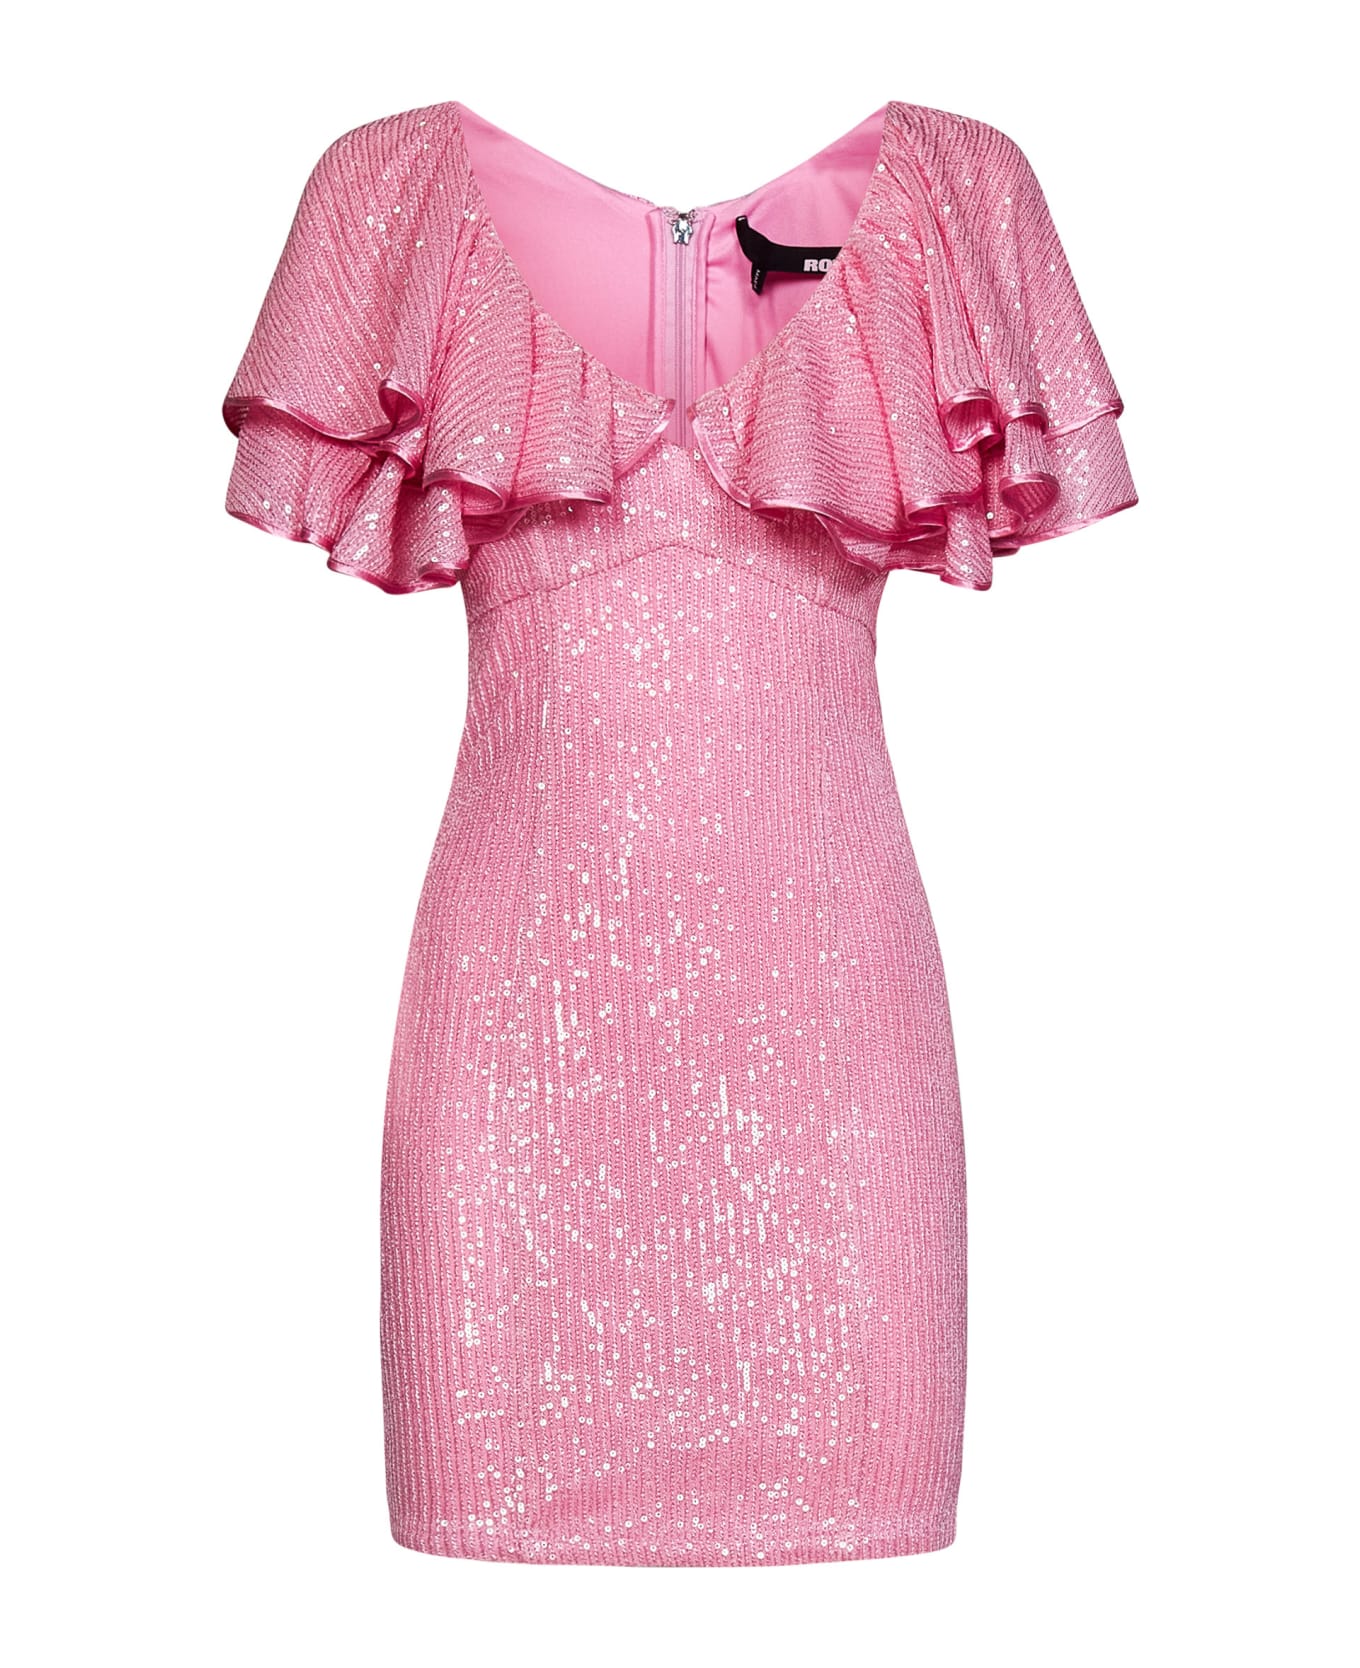 Rotate by Birger Christensen Mini Dress - Pink